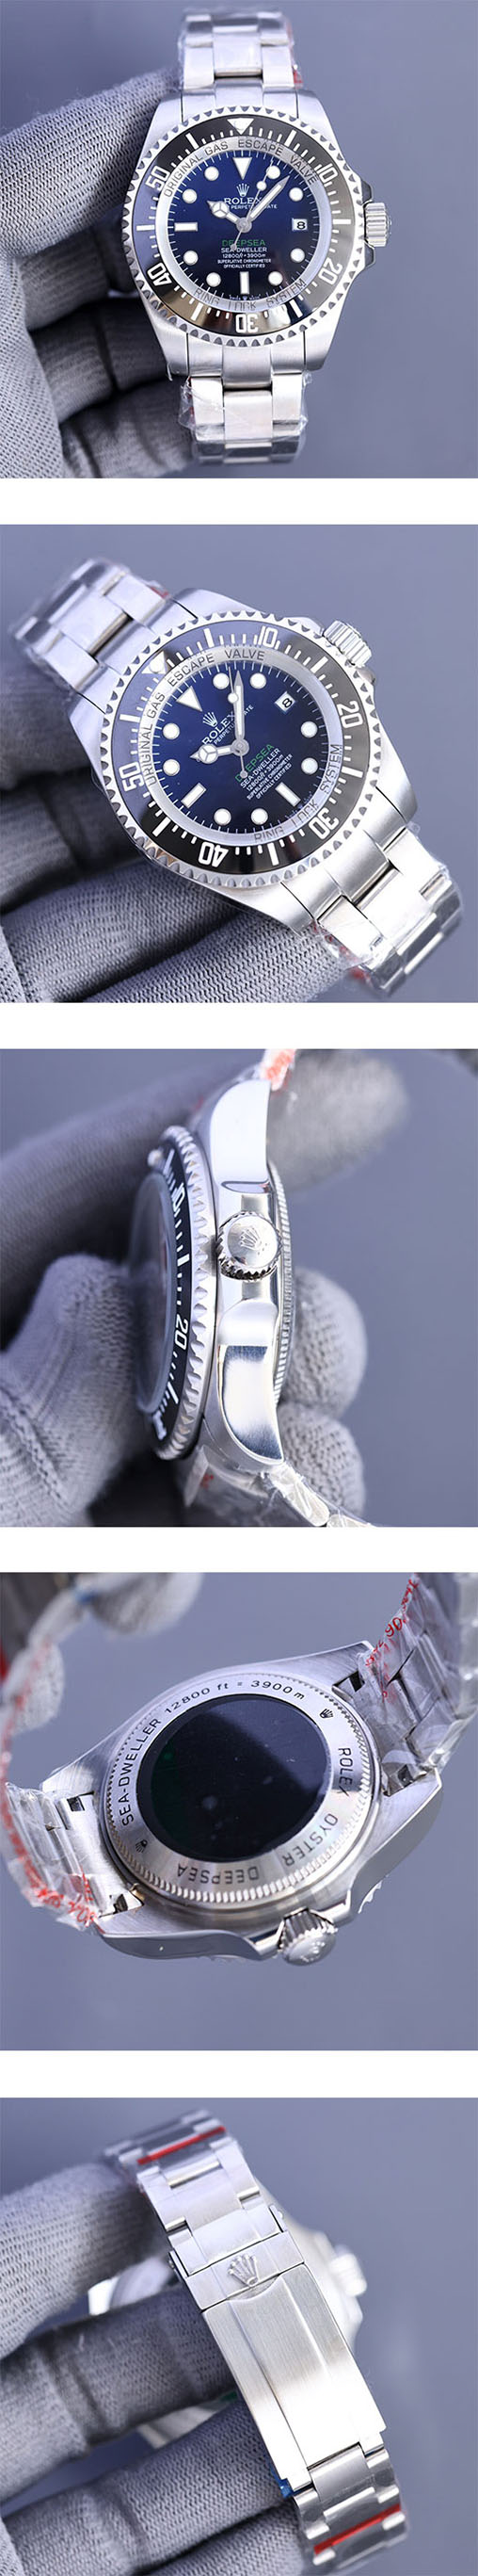 【今週特価 44mm 自動巻き】シードゥエラー コピー時計m126660-0002レディース/メンズ腕時計